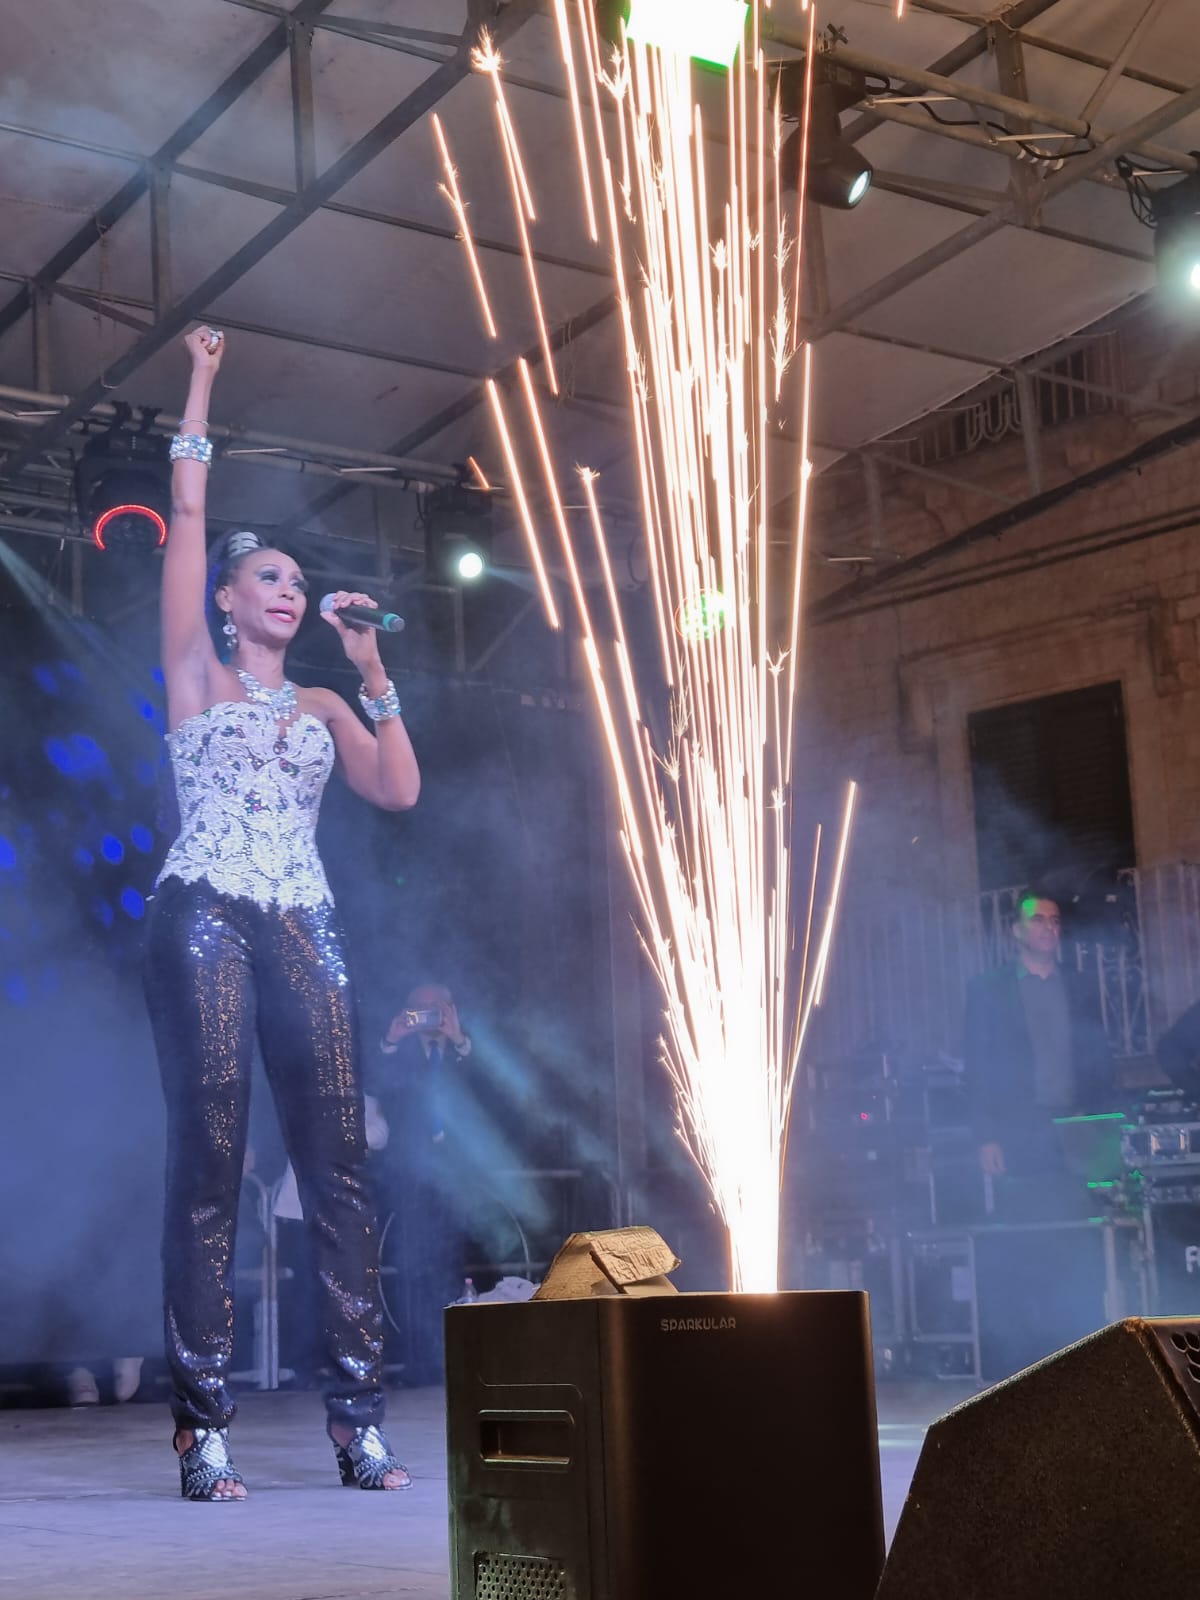 Foto 4 - Corona e Haiducii infiammano la piazza di Sammichele di Bari: spettacolo e magia